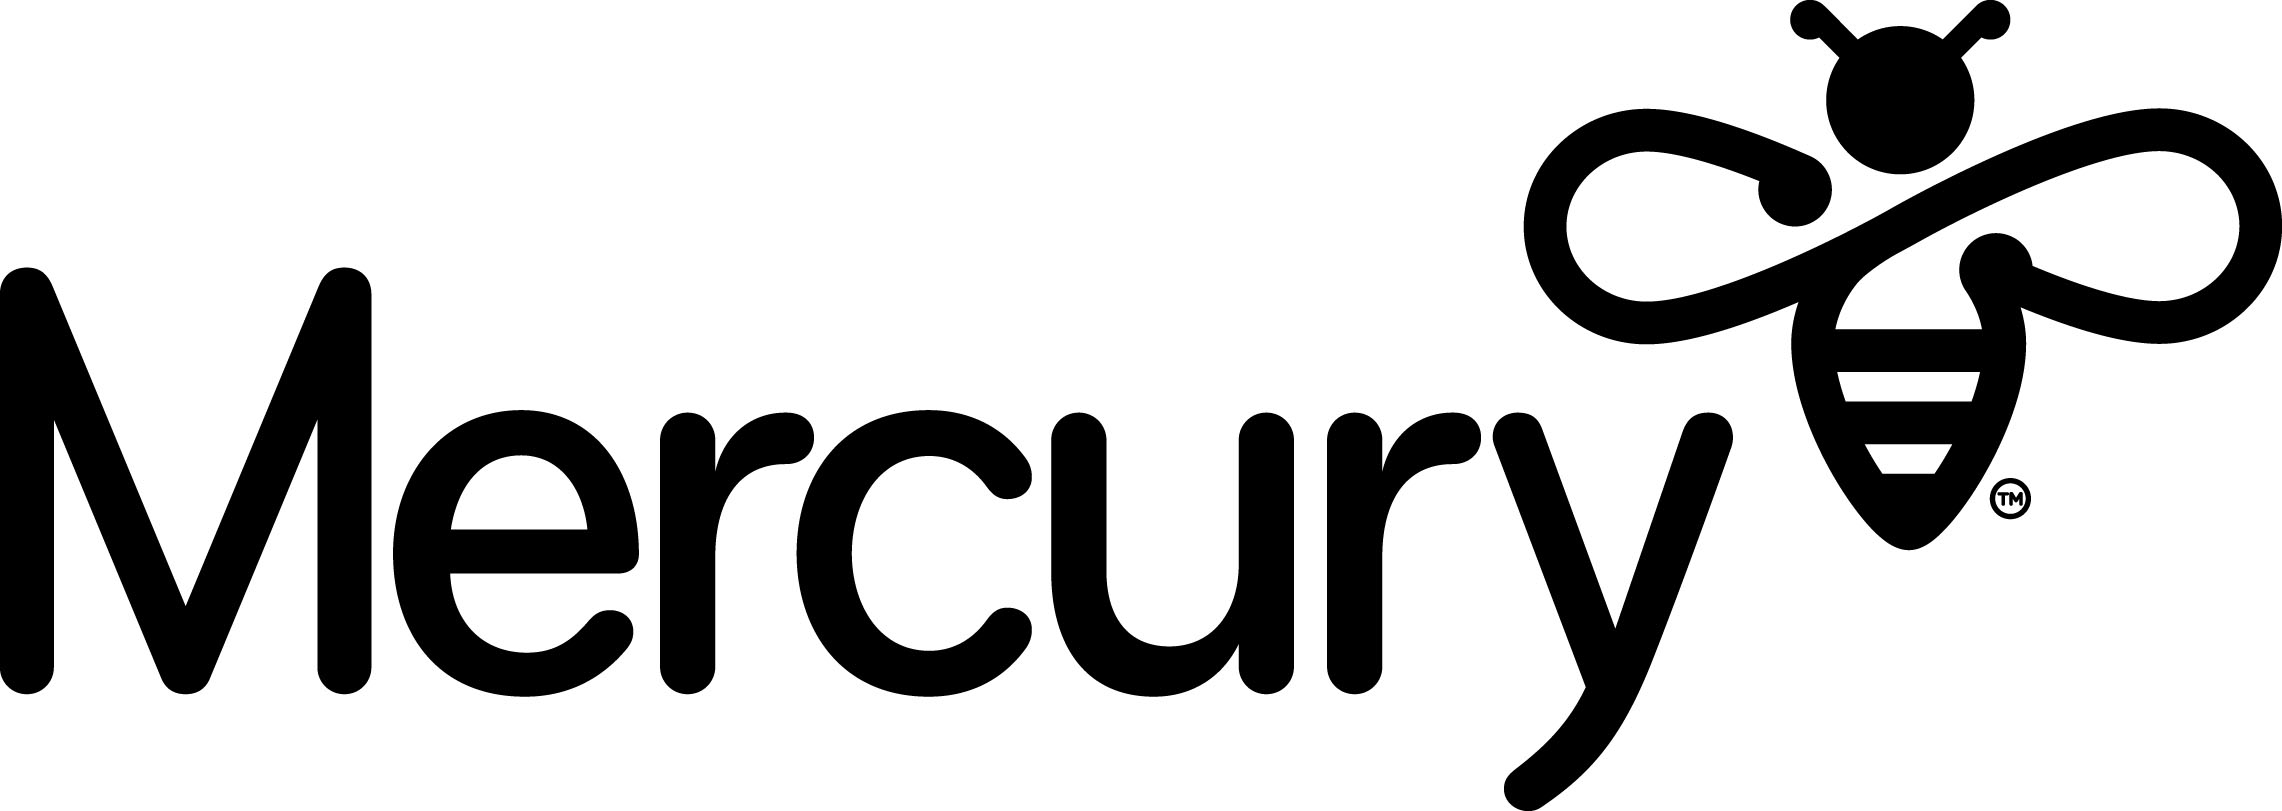 Mercury Lockup BW eps 0008025